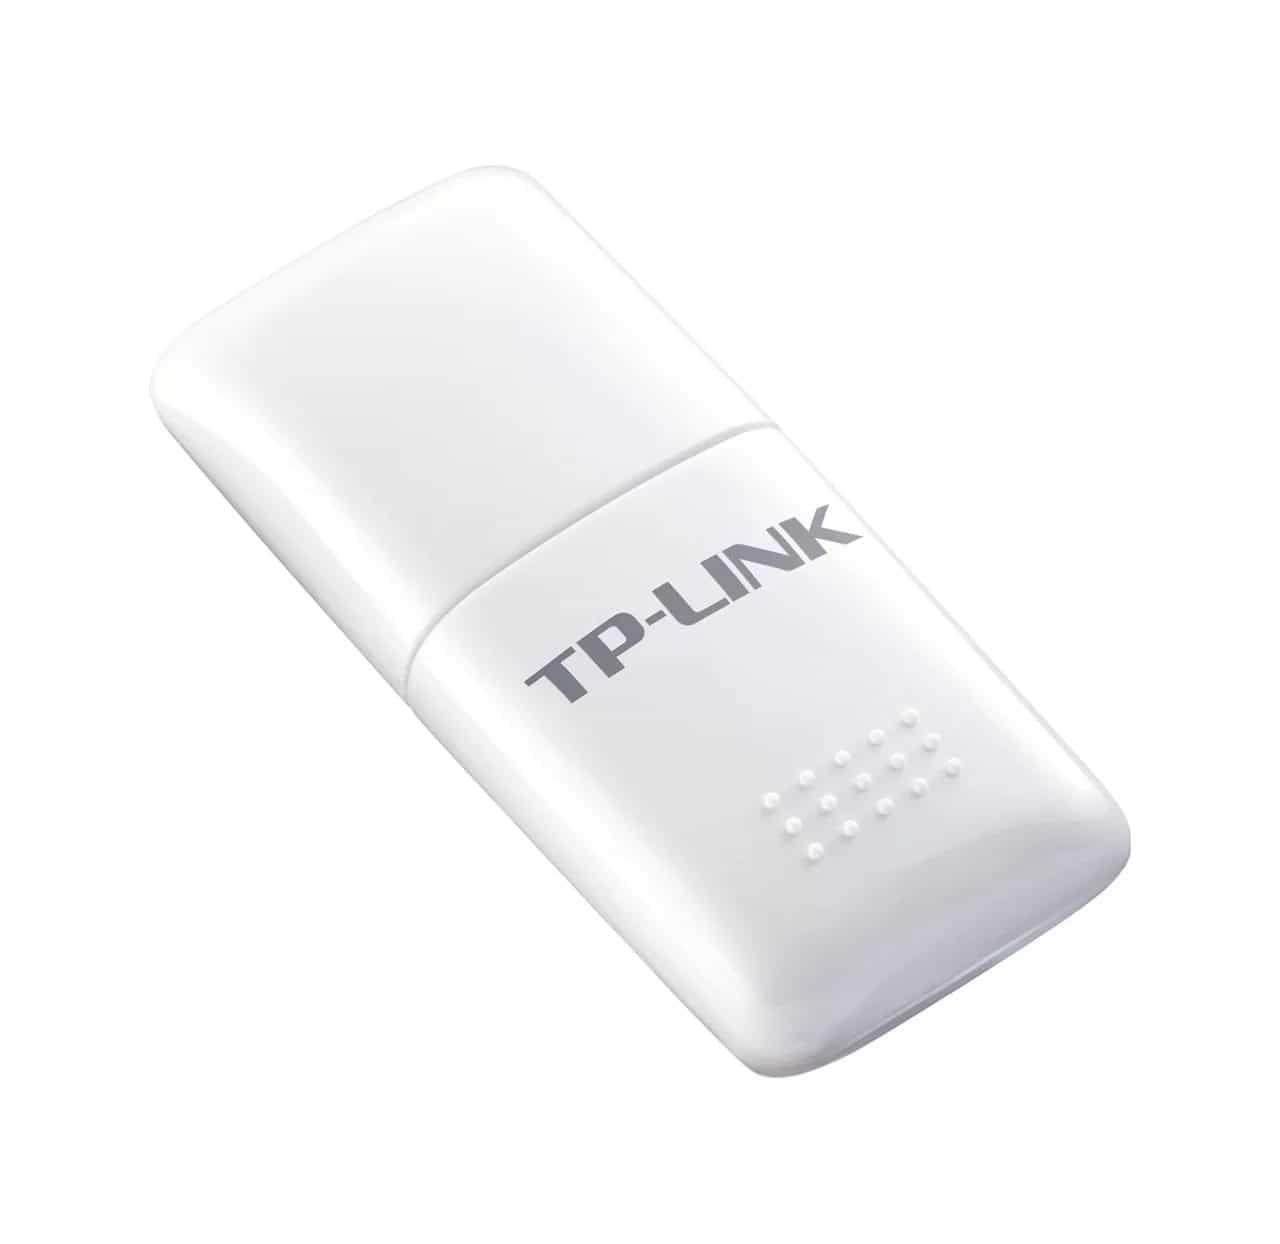 Wi-Fi адаптер TP-Link TL-WN723N-4